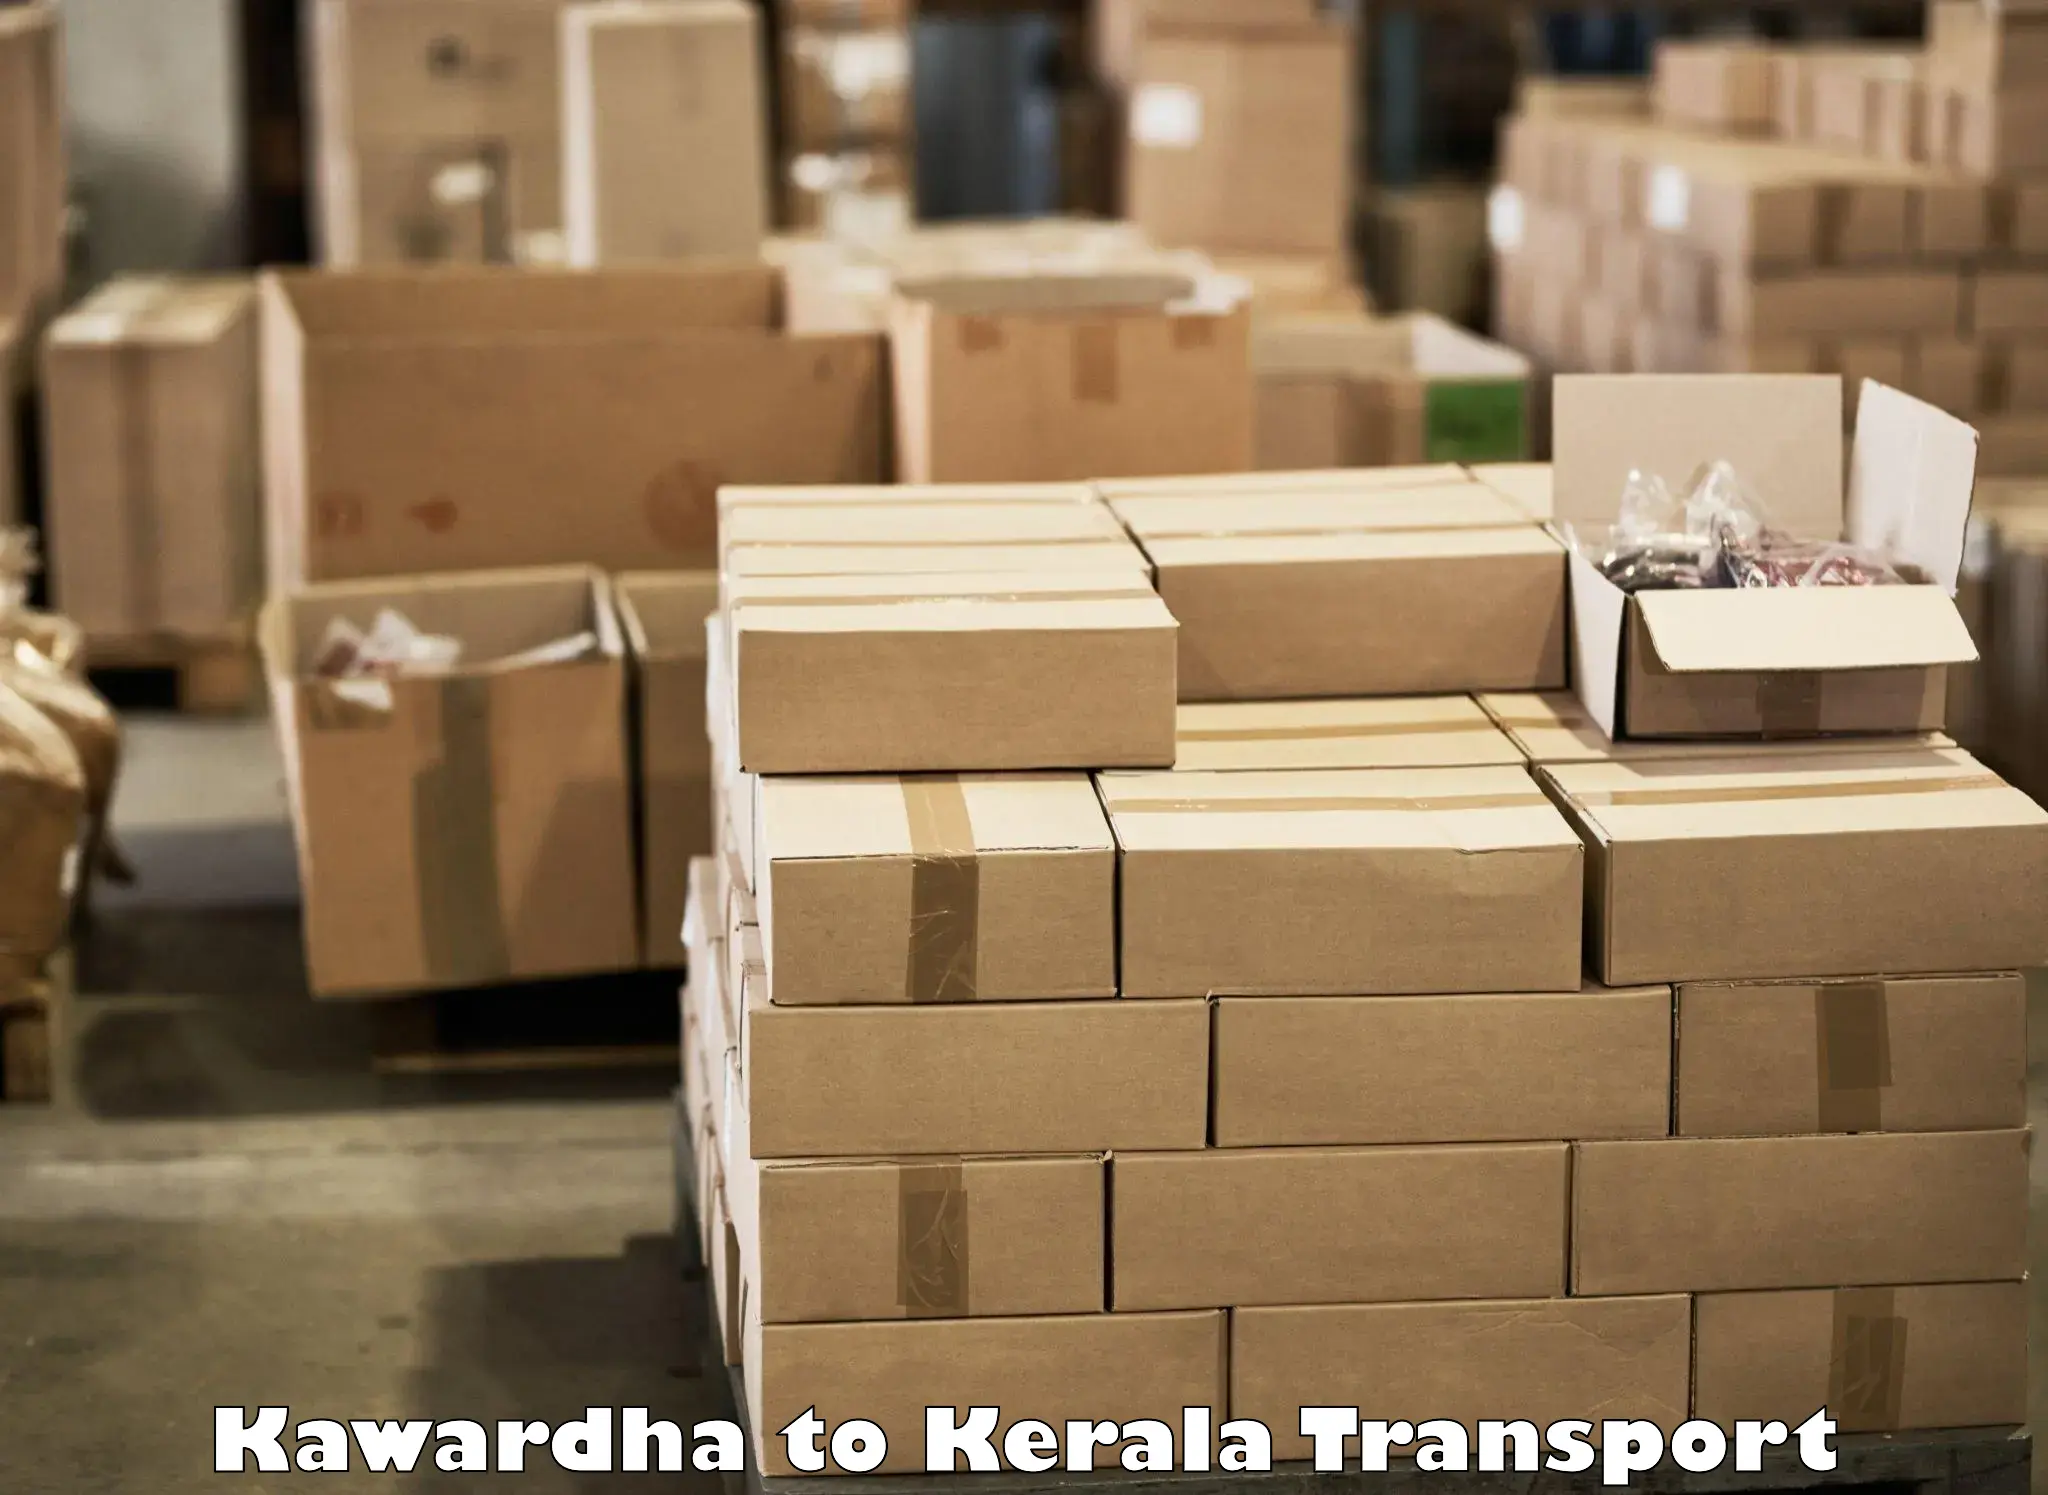 Shipping partner Kawardha to Kollam